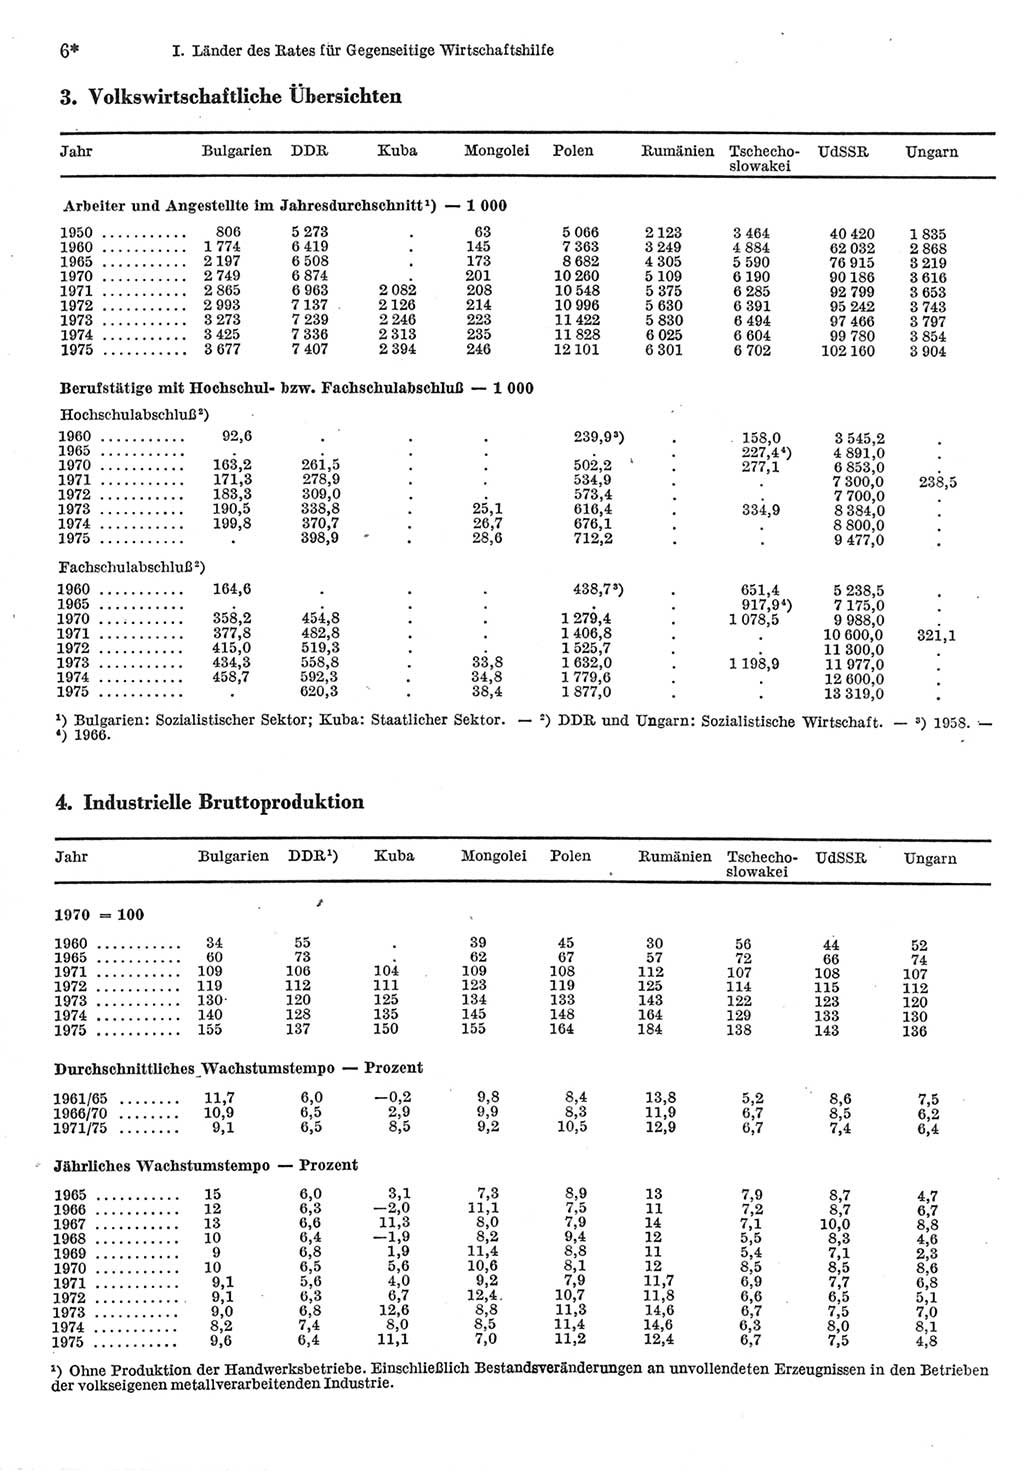 Statistisches Jahrbuch der Deutschen Demokratischen Republik (DDR) 1977, Seite 6 (Stat. Jb. DDR 1977, S. 6)